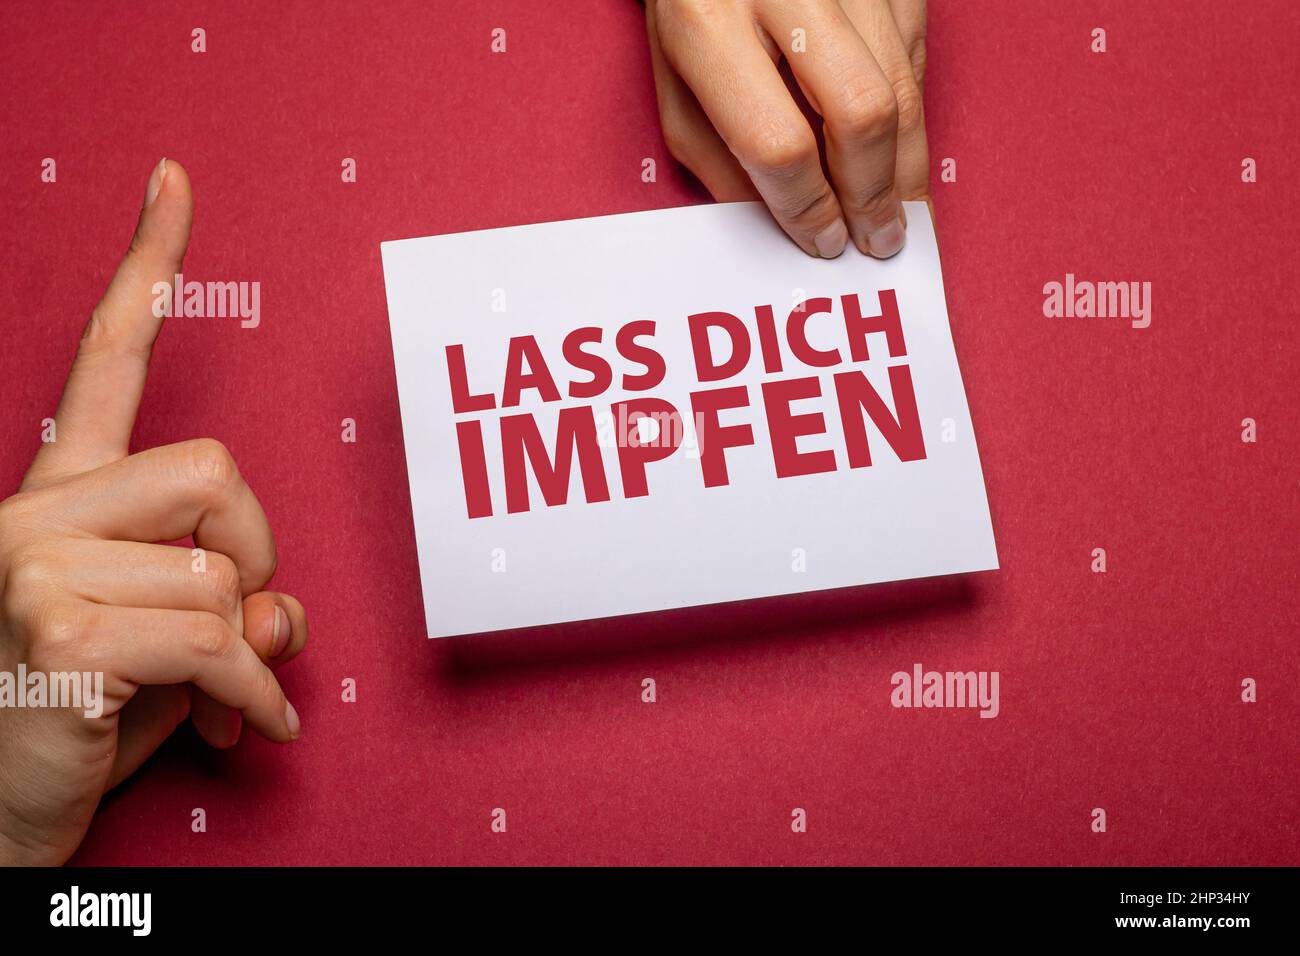 la mano femmina tiene un pezzo di carta con il testo lass dich impfen (ottenere vaccinato in lingua tedesca) davanti ad un cartone rosso scuro di fondo con Foto Stock